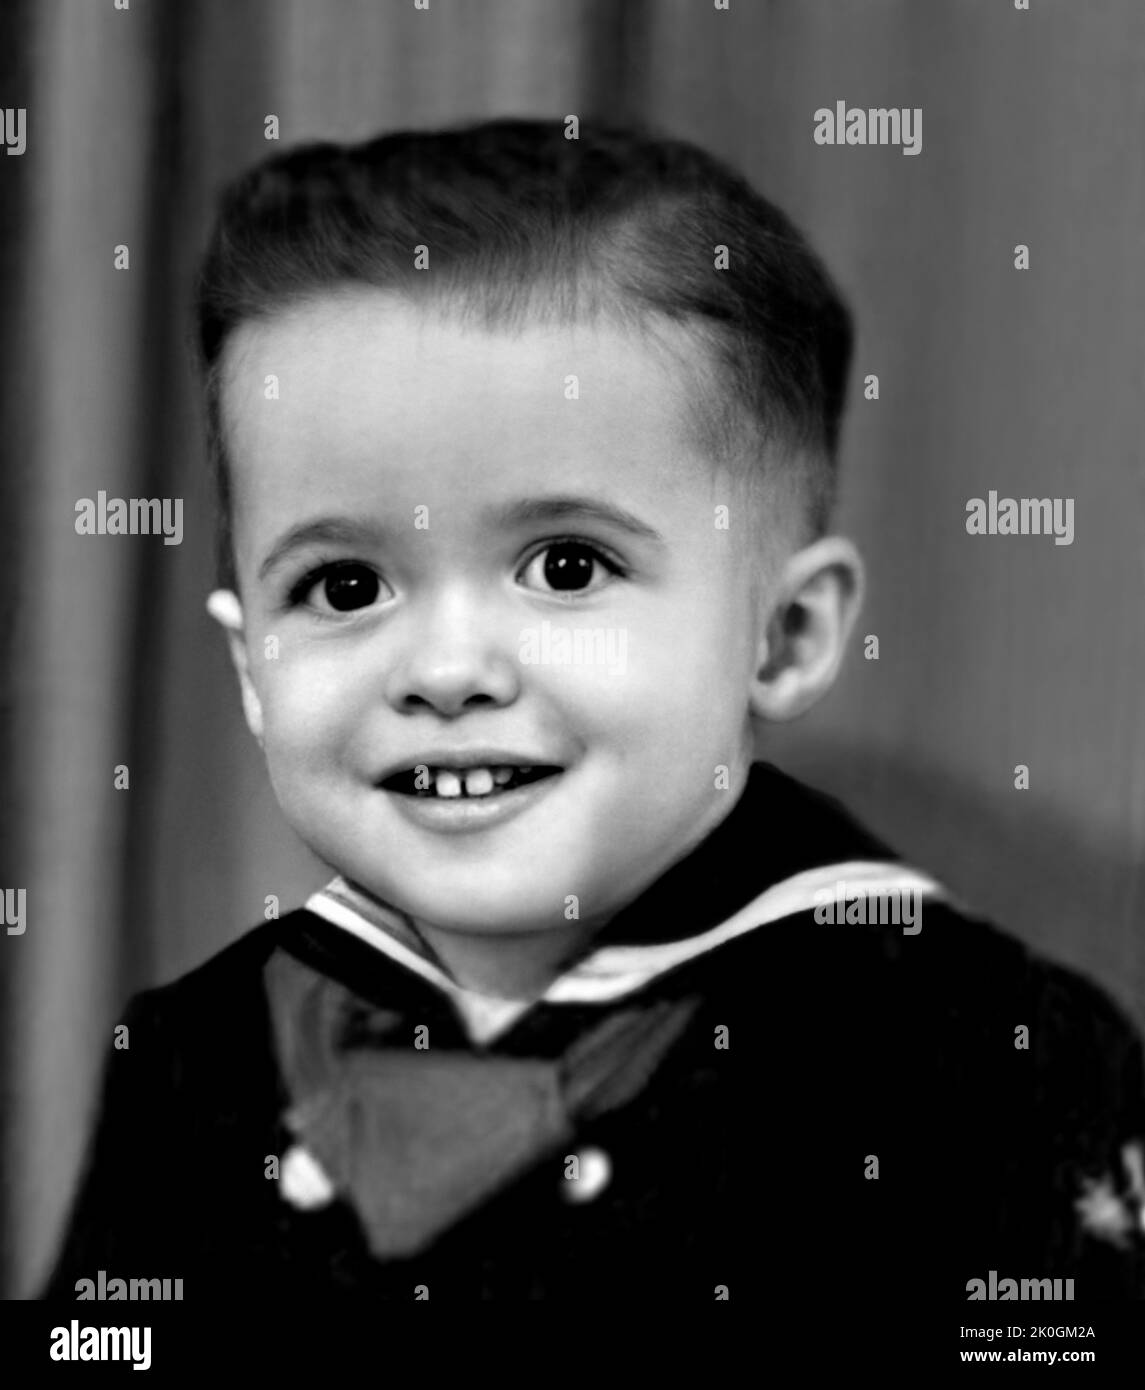 1949 CA , USA : le célèbre écrivain brésilien PAULO COELHO ( né le 24 août 1947 ) quand était jeune garçon de 2 ans . Photographe inconnu. - HISTOIRE - FOTO STORICHE - Personalità da giovane giovani - personnalité personnalités quand était jeune - PORTRAIT - RITRATTO - SCRITTORE - LETTERATURA - LITTÉRATURE - BAMBINO - BAMBINI - ENFANT - ENFANTS - INFANZIA - ENFANCE - vestito alla marinara - marinaretta - Archivio robe - GBB- VOILA Banque D'Images